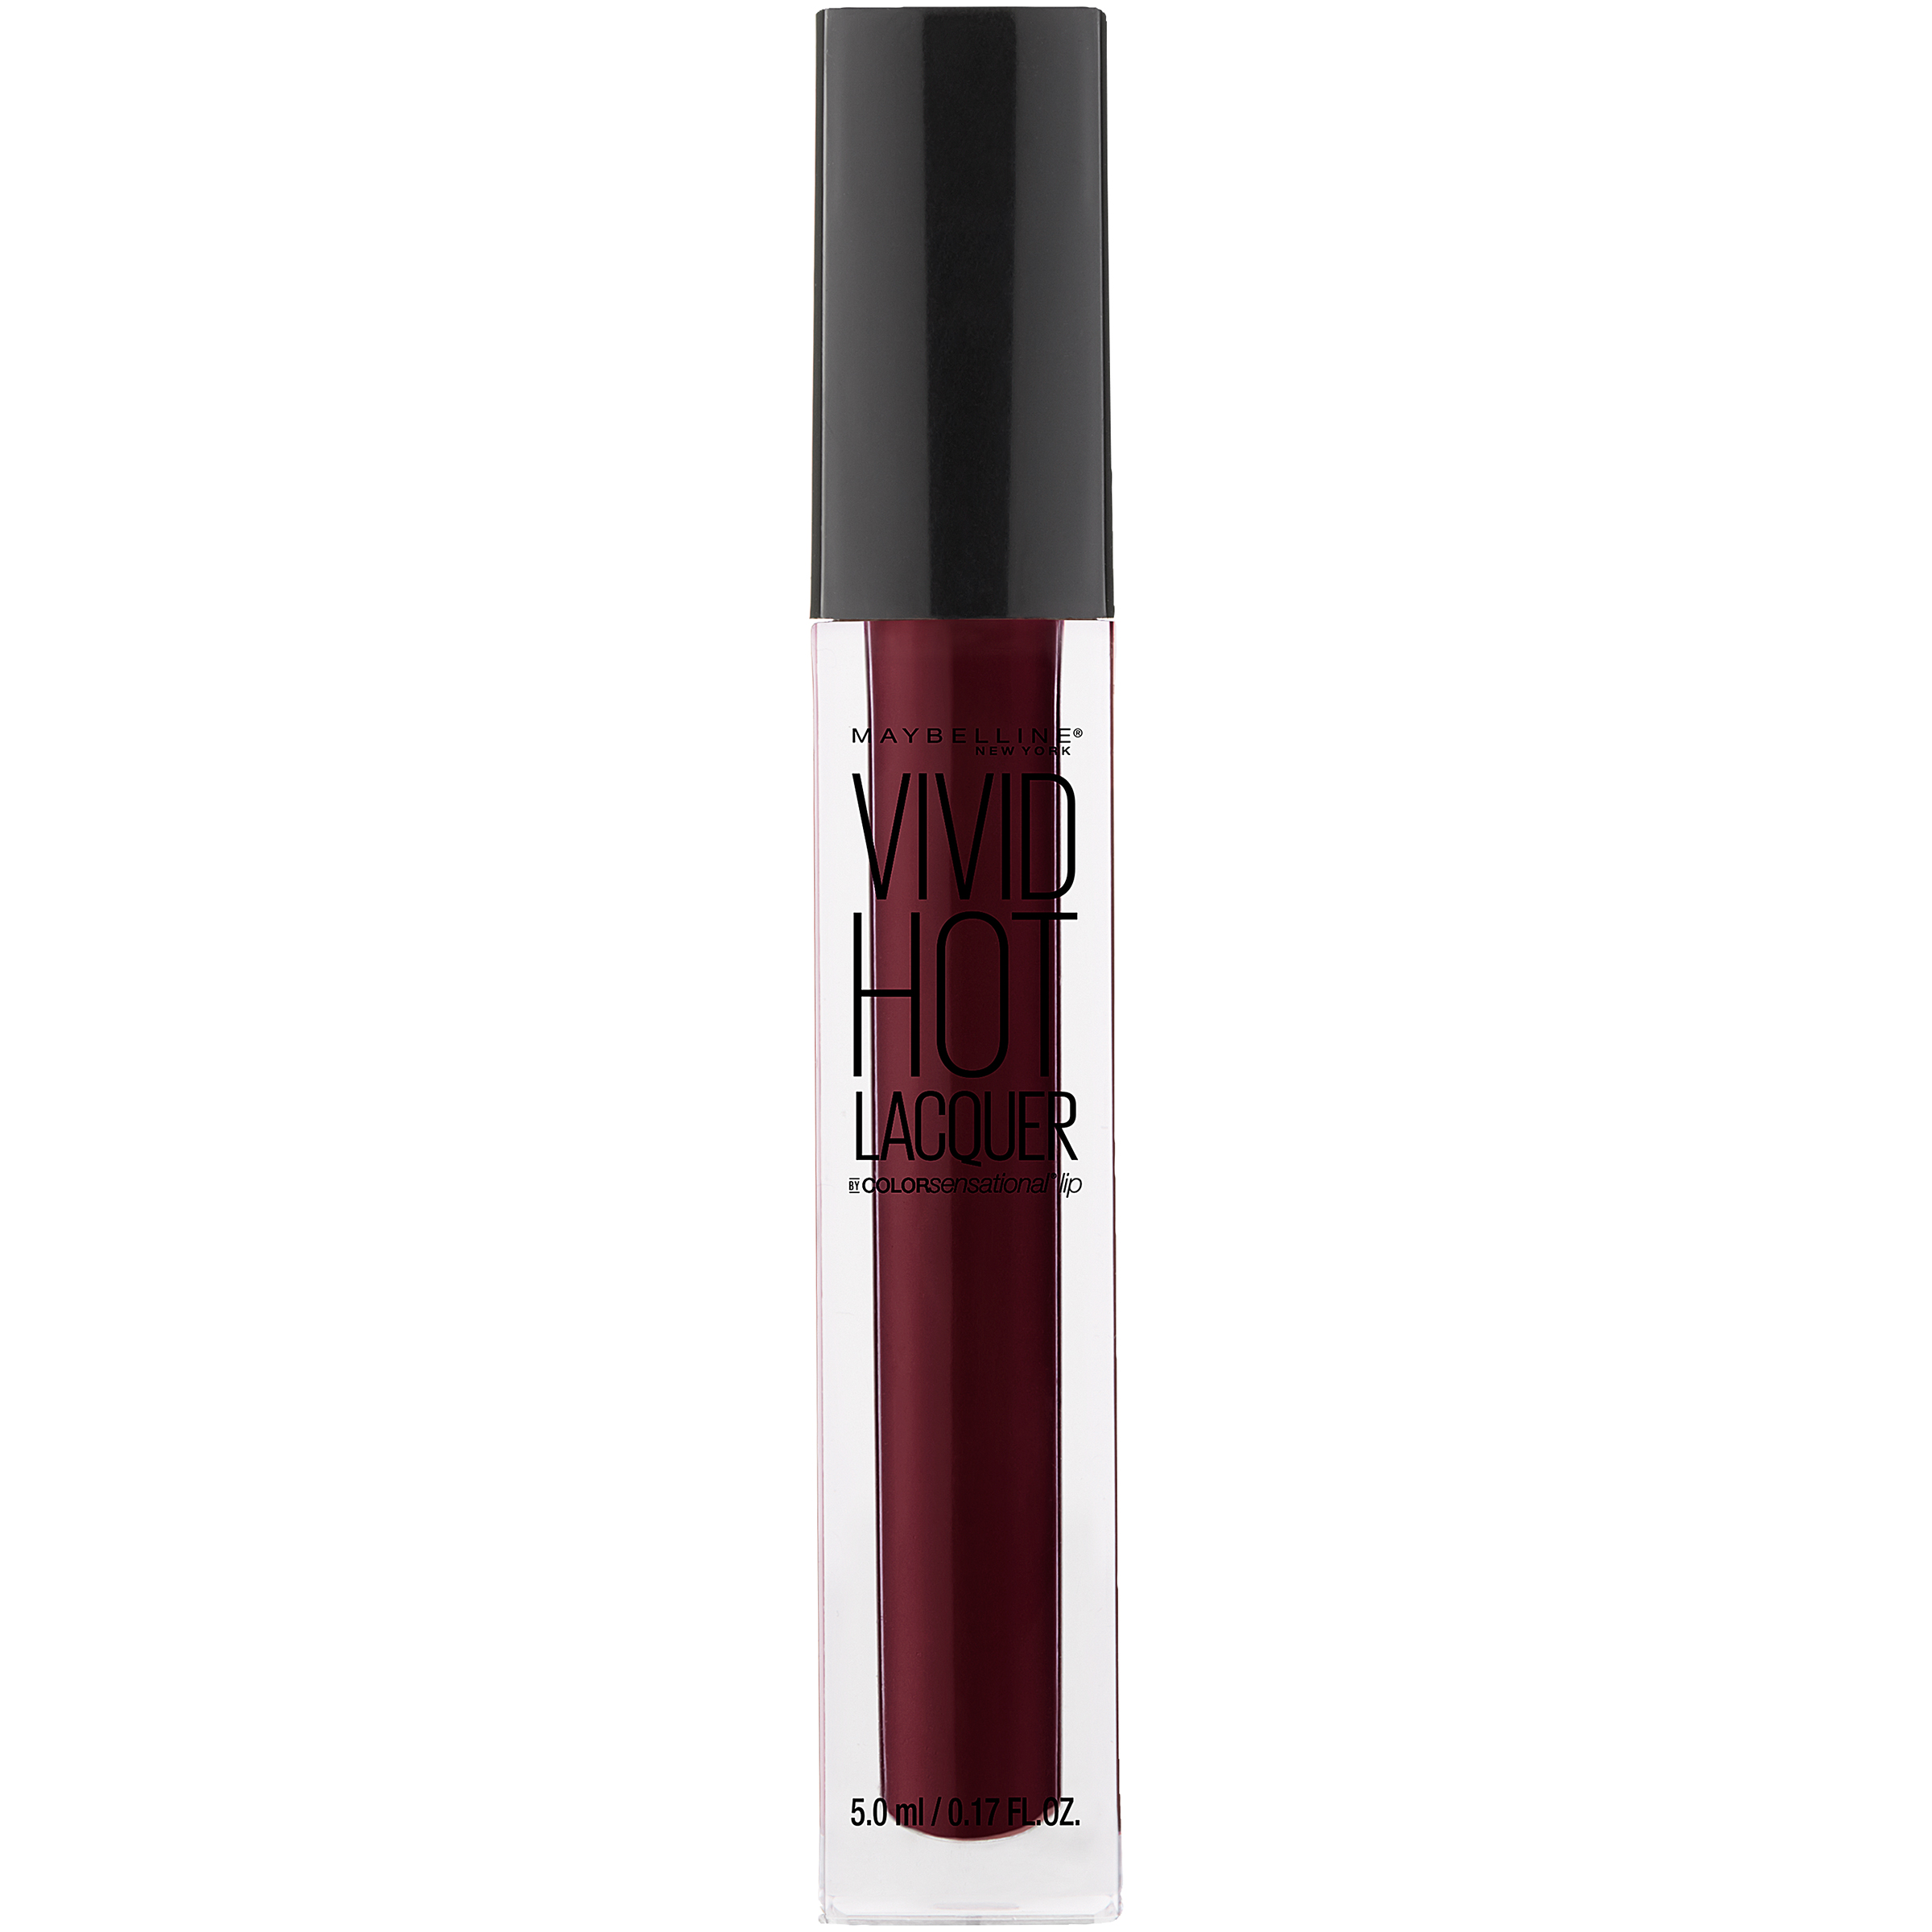 Maybelline Color Sensational Vivid Hot Lacquer Lip Gloss, Retro, 0.17 fl. oz.